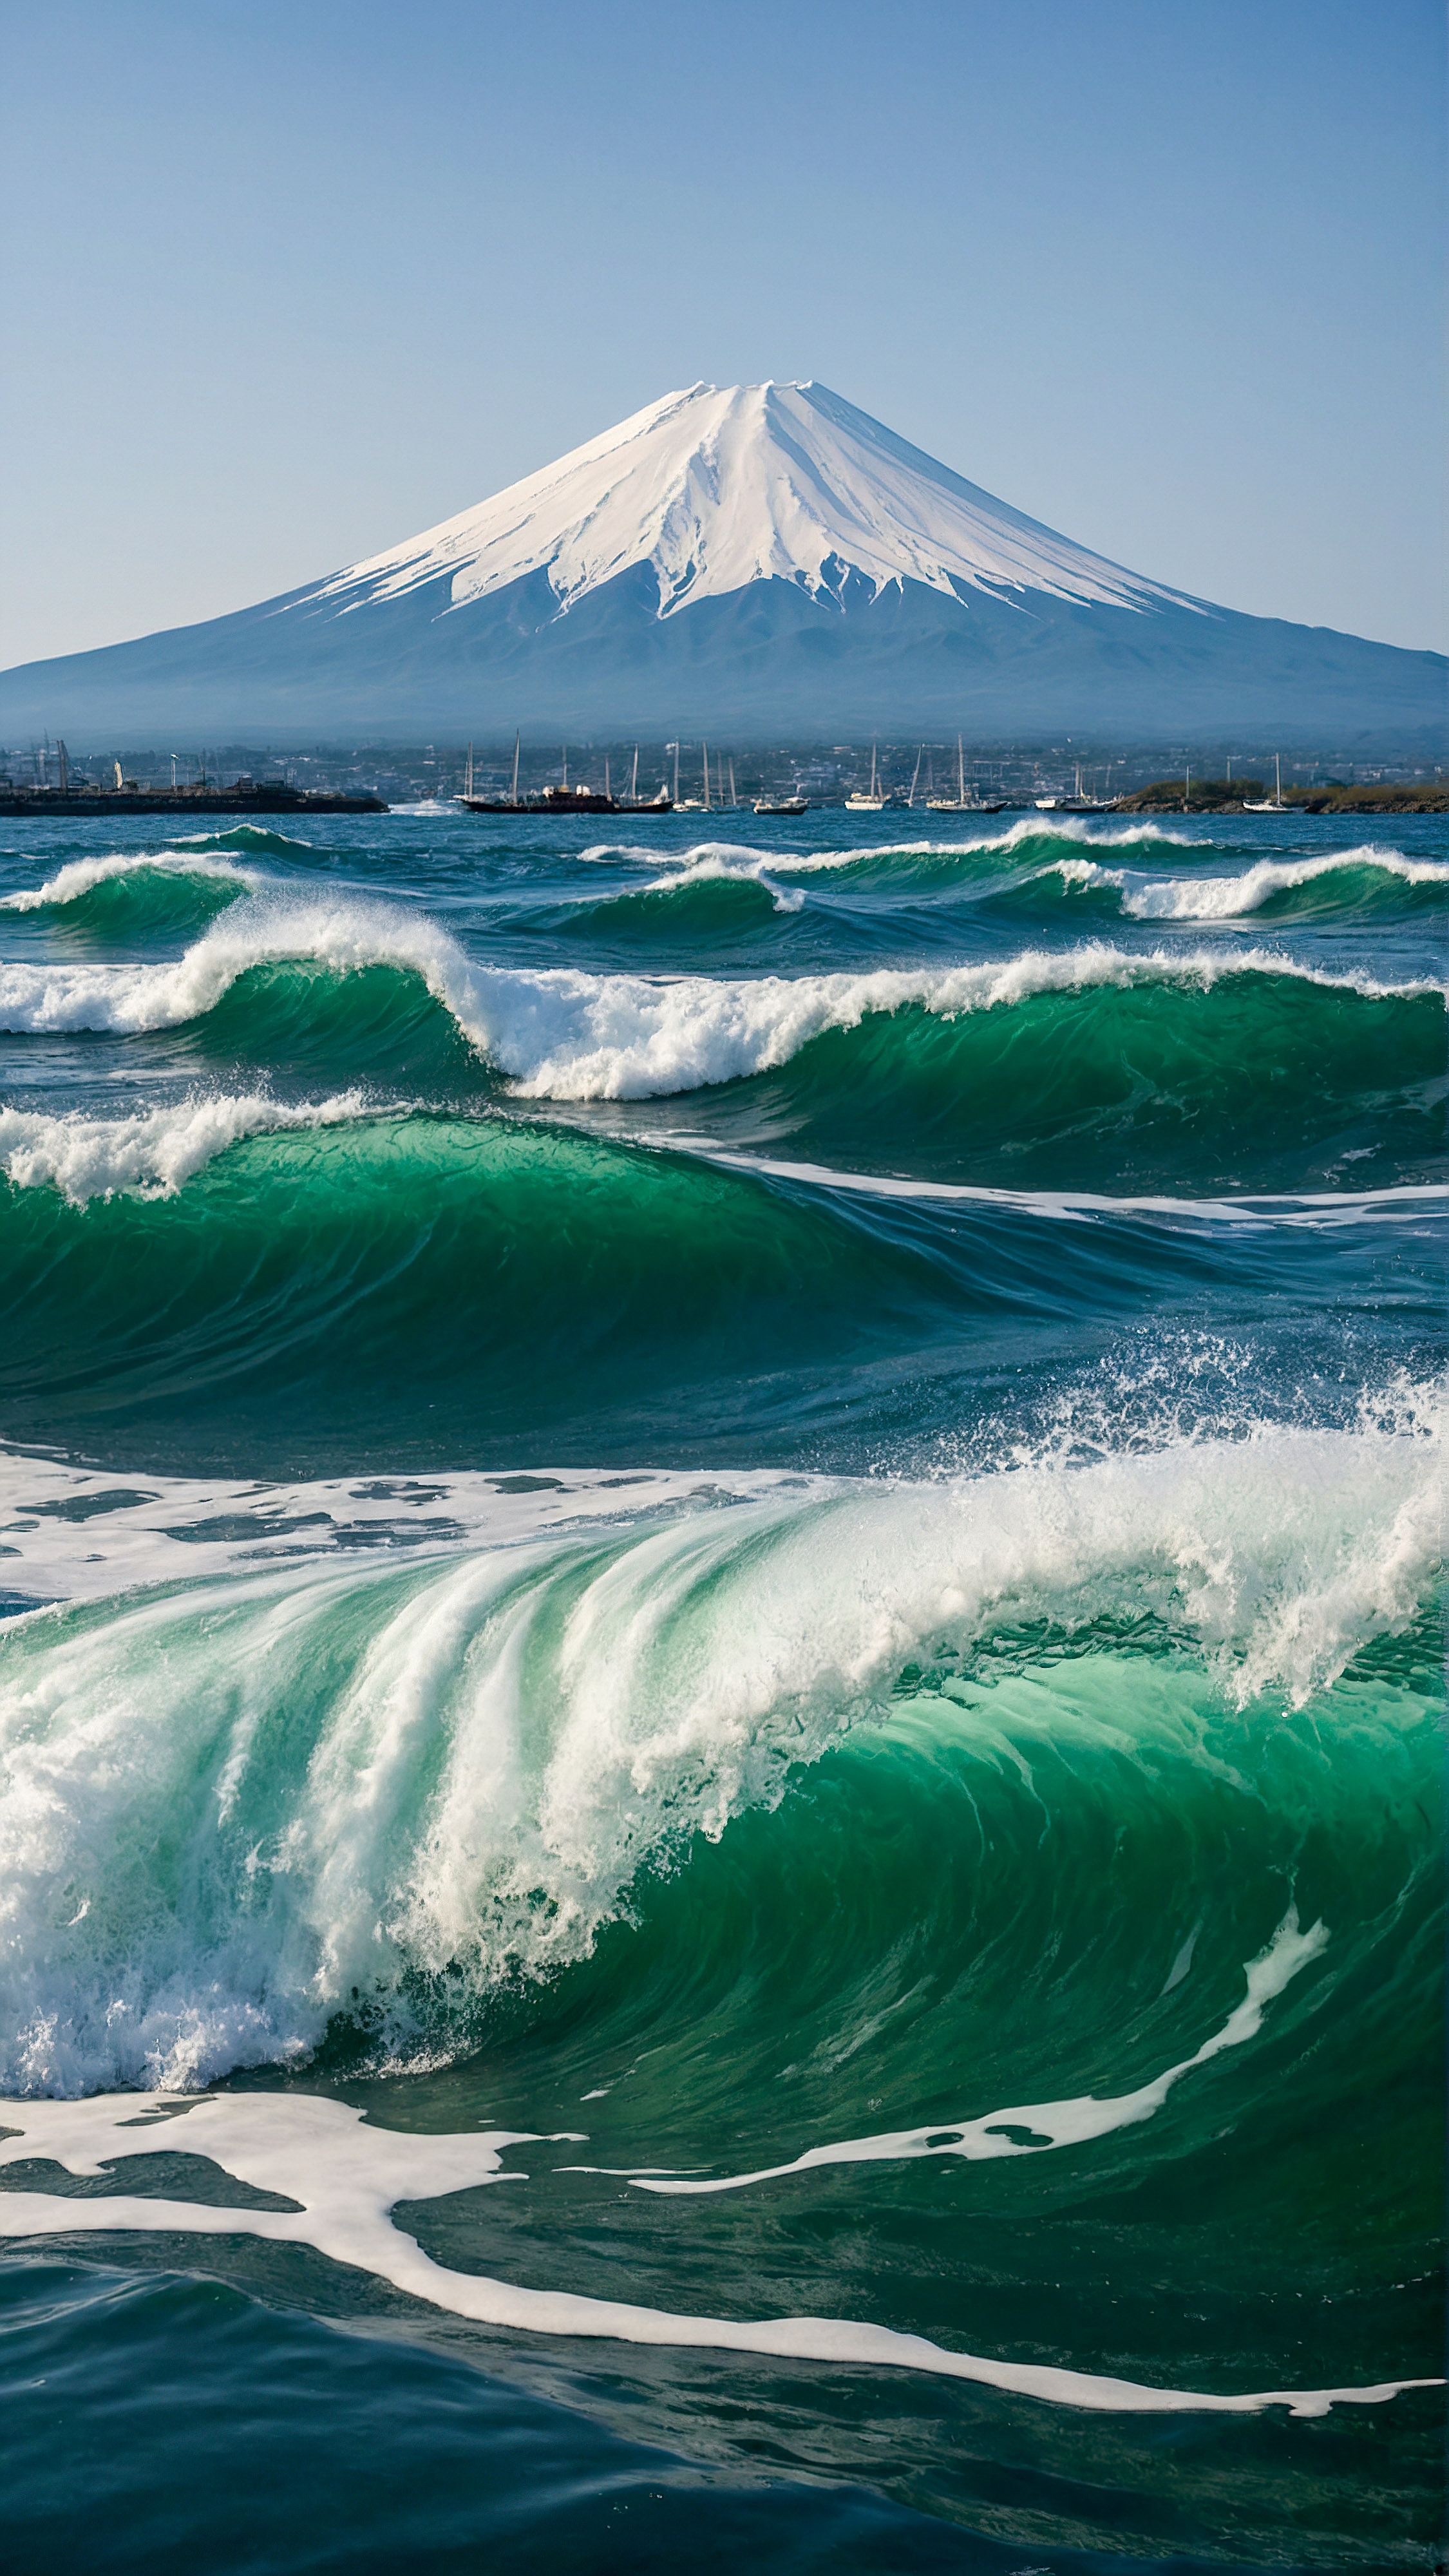 Ornez votre iPhone avec un arrière-plan esthétique inspiré par La Grande Vague de Kanagawa, une œuvre d'art de style japonais traditionnel représentant une grande vague verte puissante avec de l'écume blanche, le mont Fuji en arrière-plan, et plusieurs bateaux sur la mer tumultueuse.